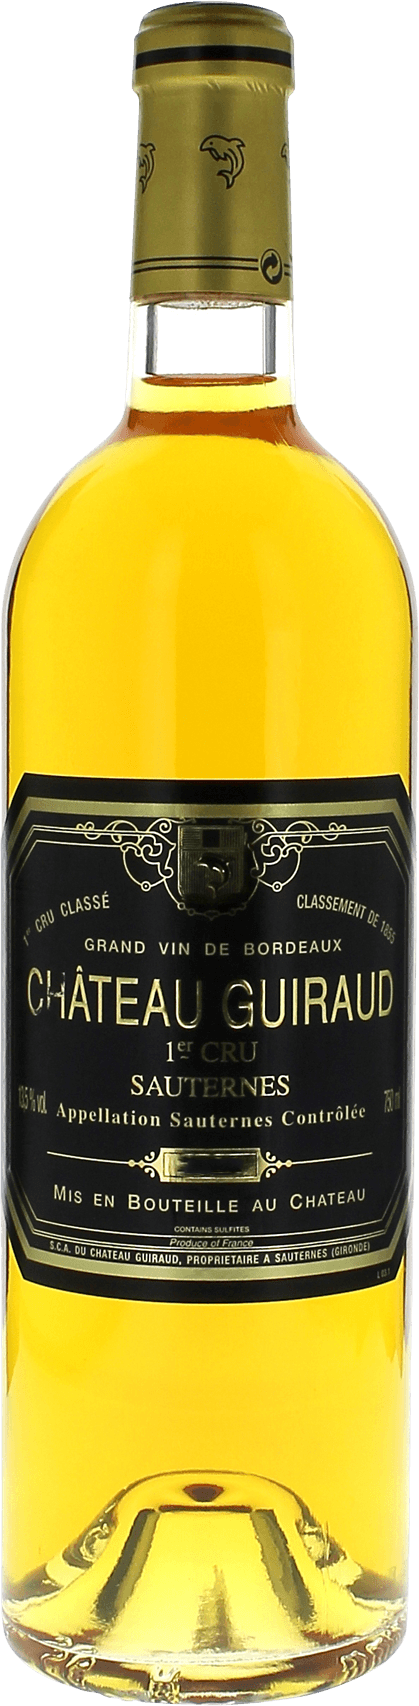 Guiraud 2003  Sauternes, Bordeaux blanc